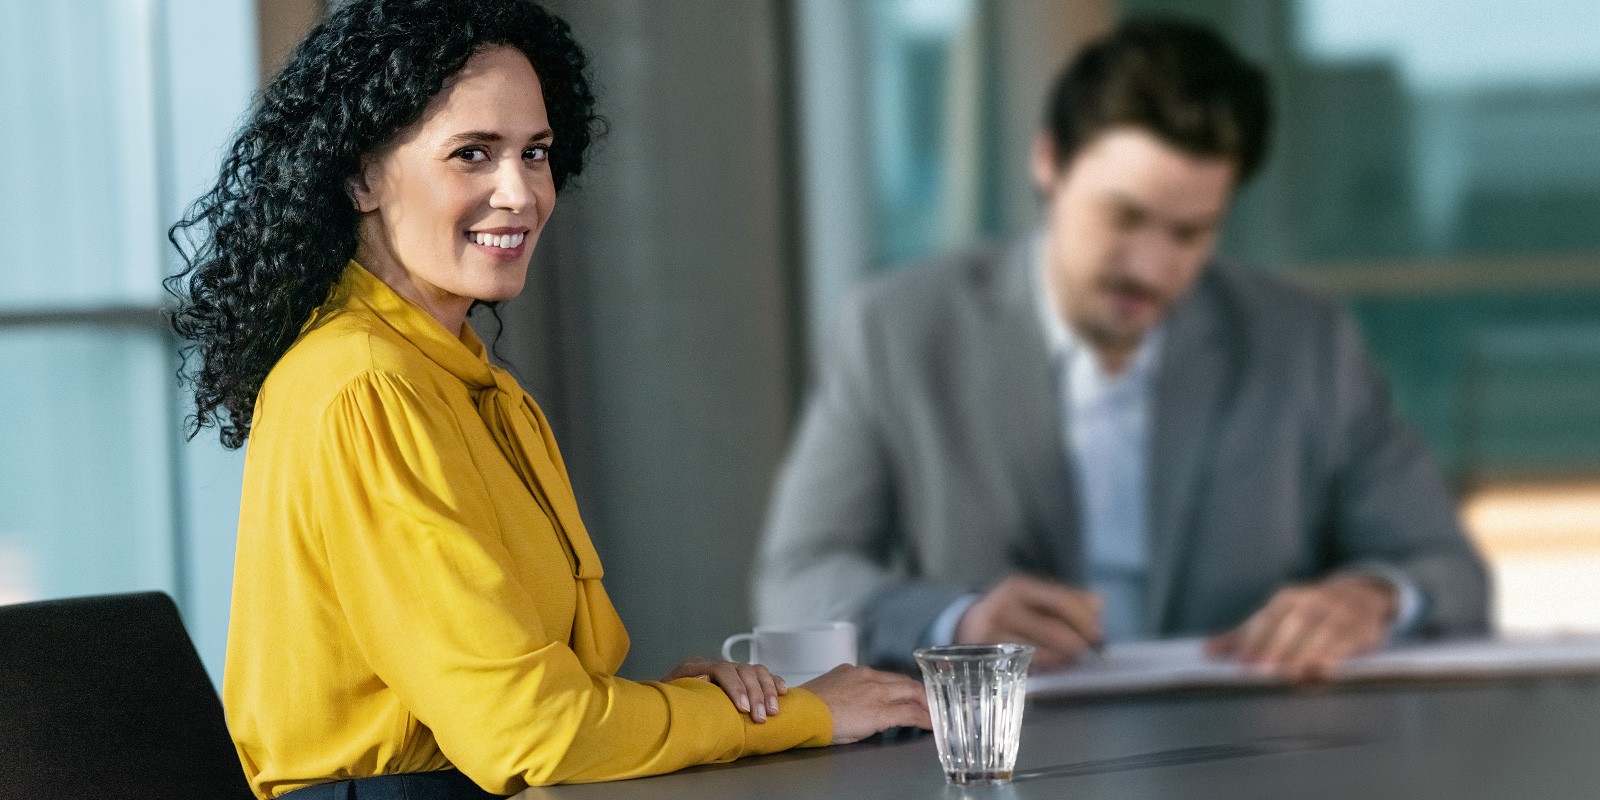 Das Bild zeigt eine Frau mit einer gelben Bluse, die lächelnd direkt in die Kamera schaut und links neben ihrem Steuerberater an einem Schreibtisch sitzt. 